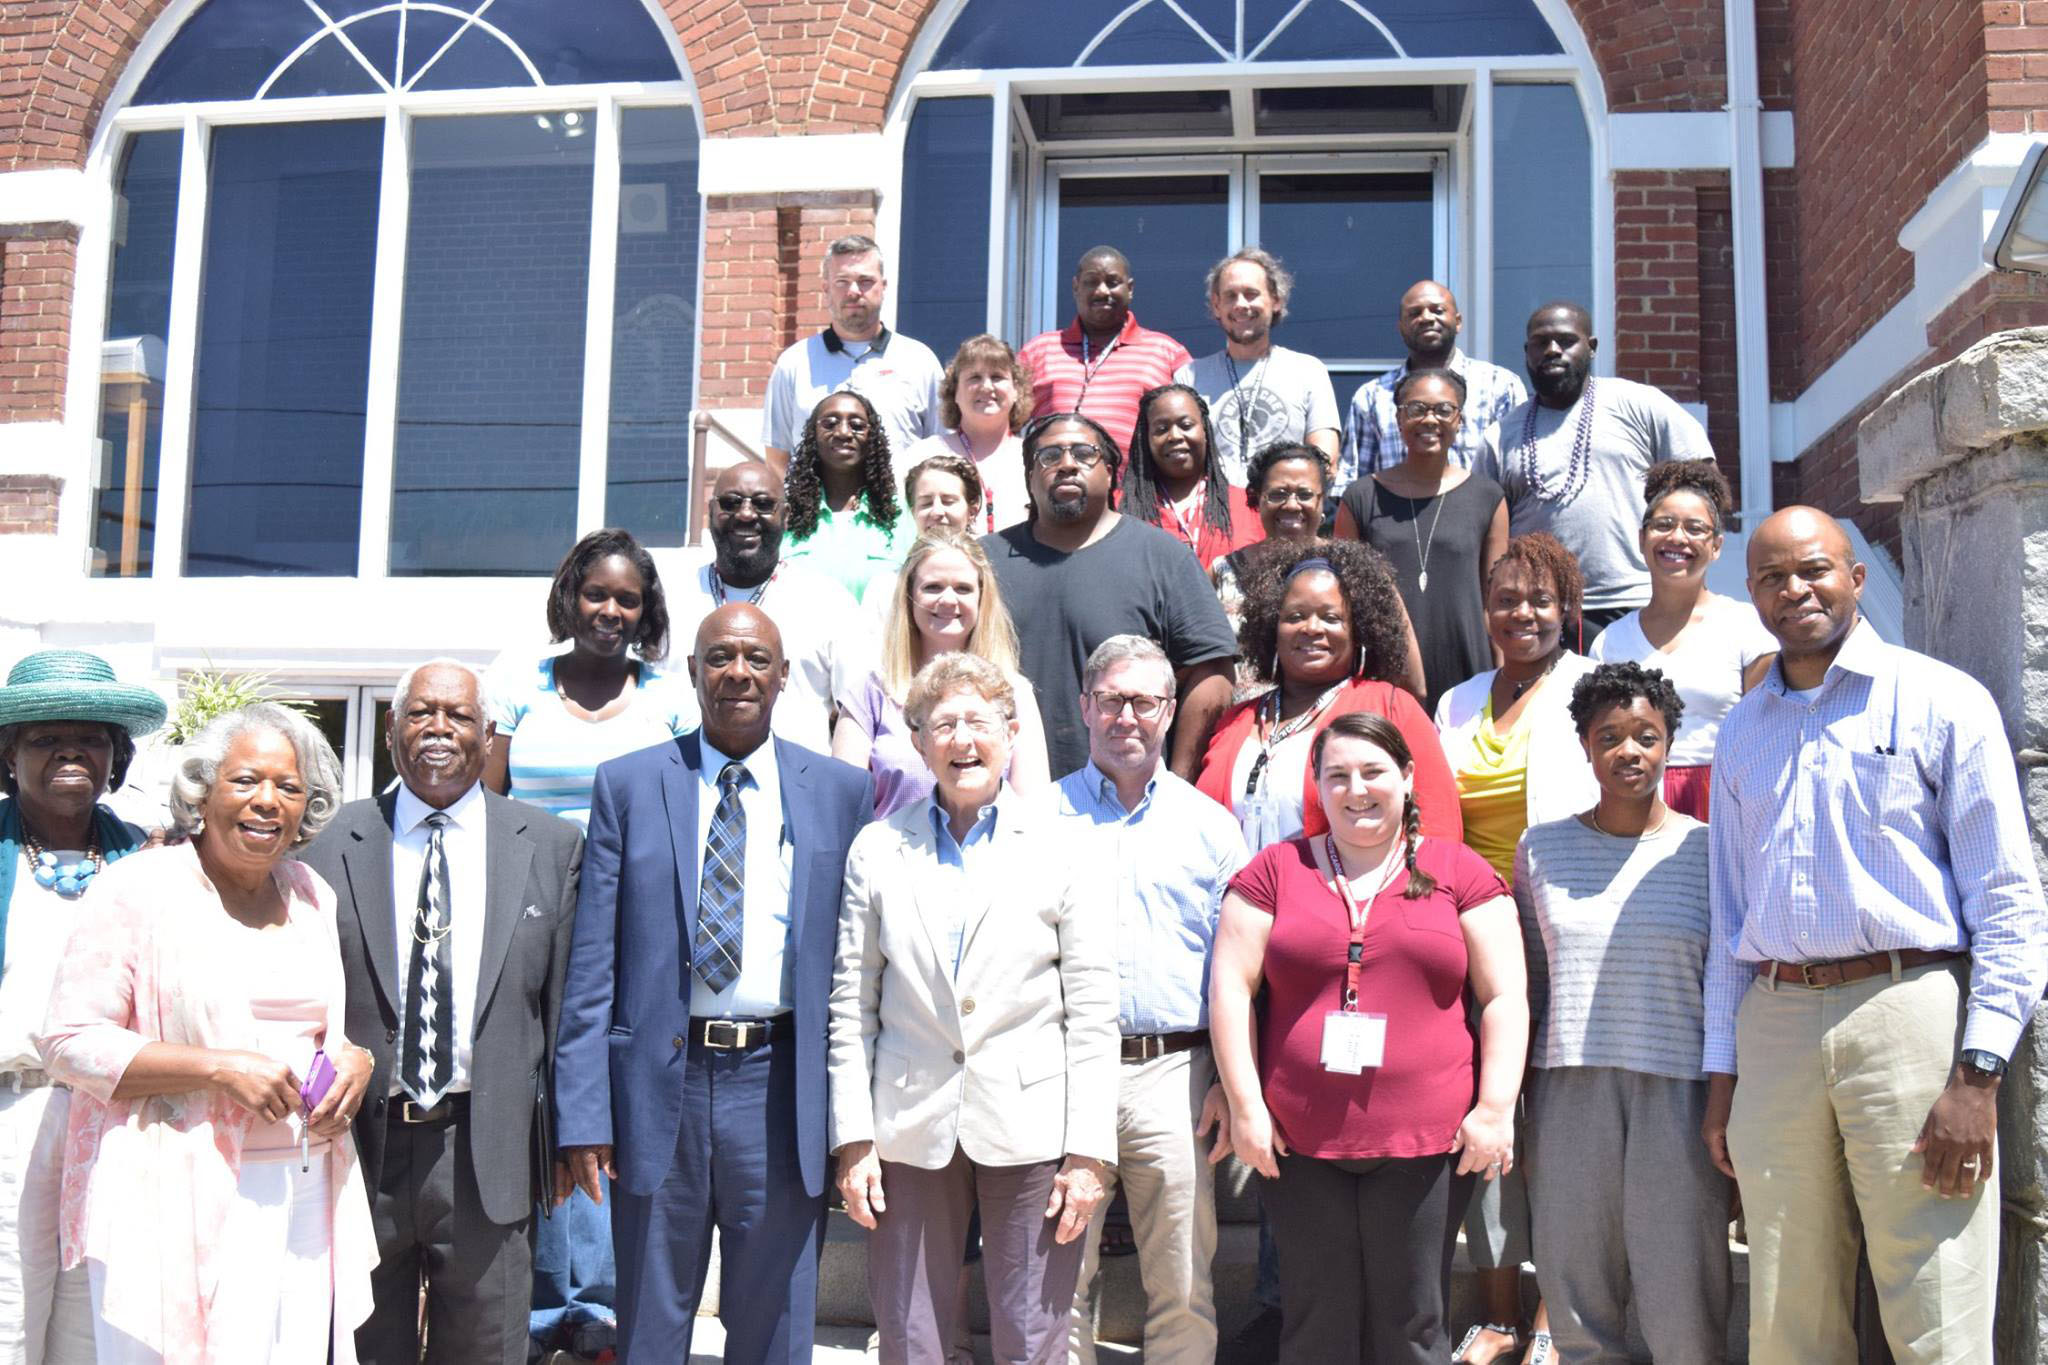 Civil rights teacher institute participants and leders